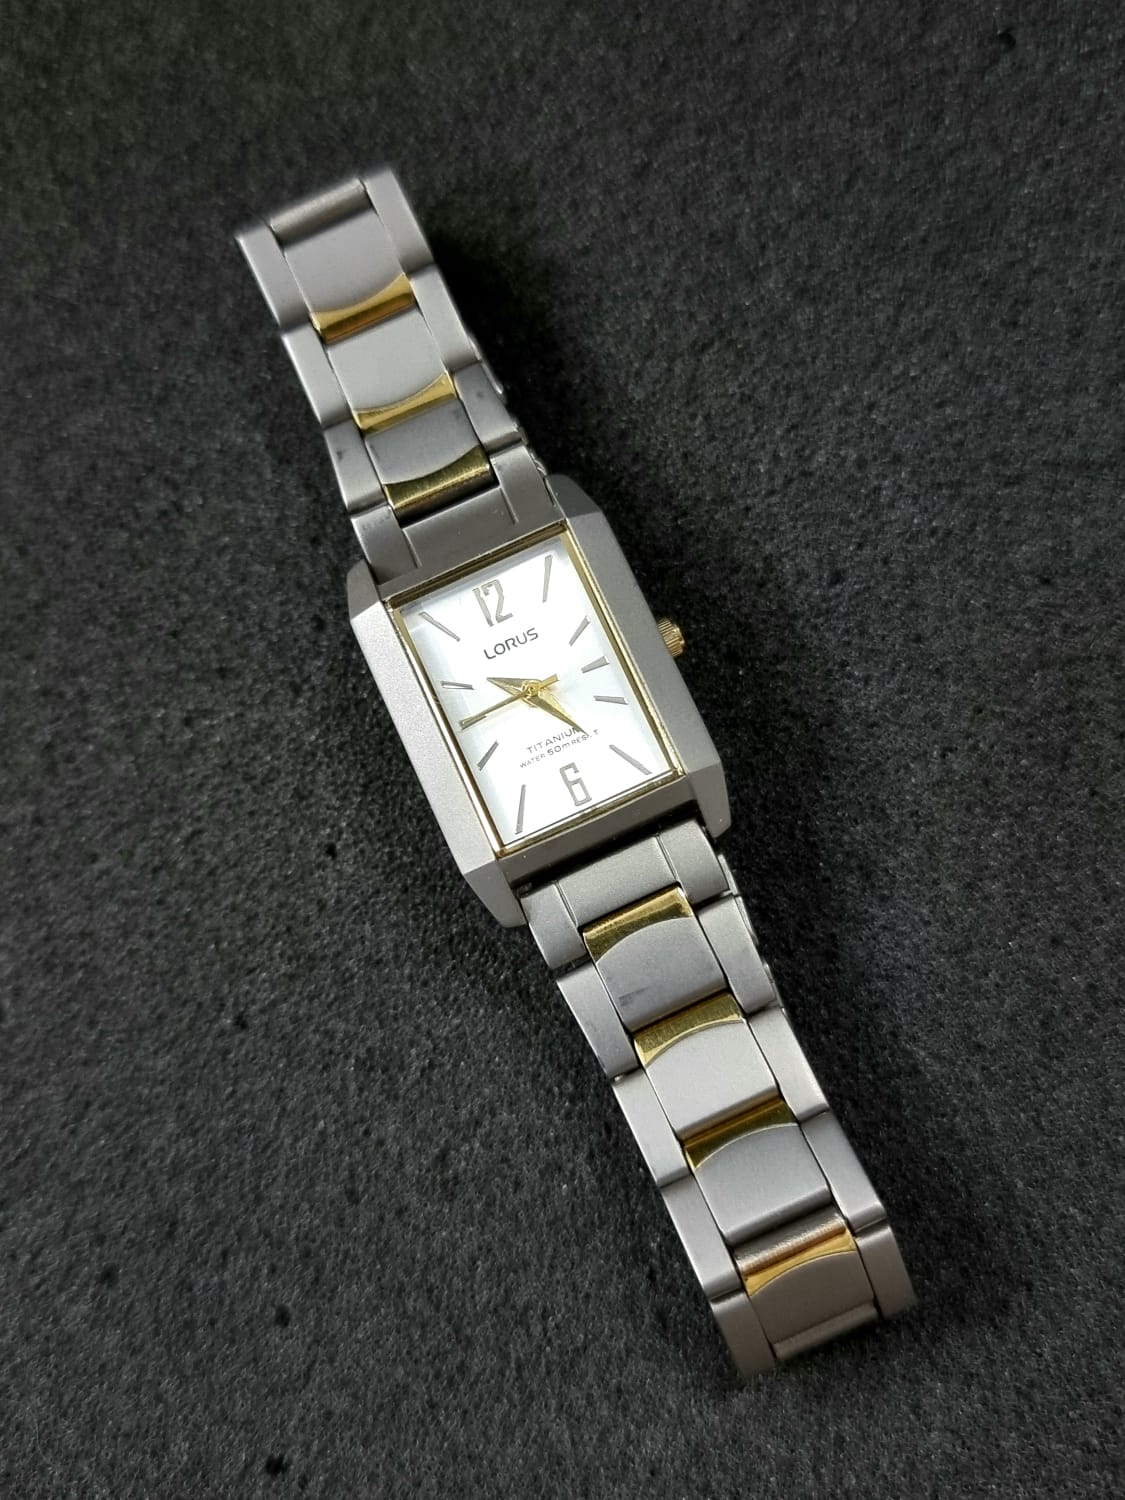 Lorus Sub Brand OF Seiko Titanium Casing Ladies Watch